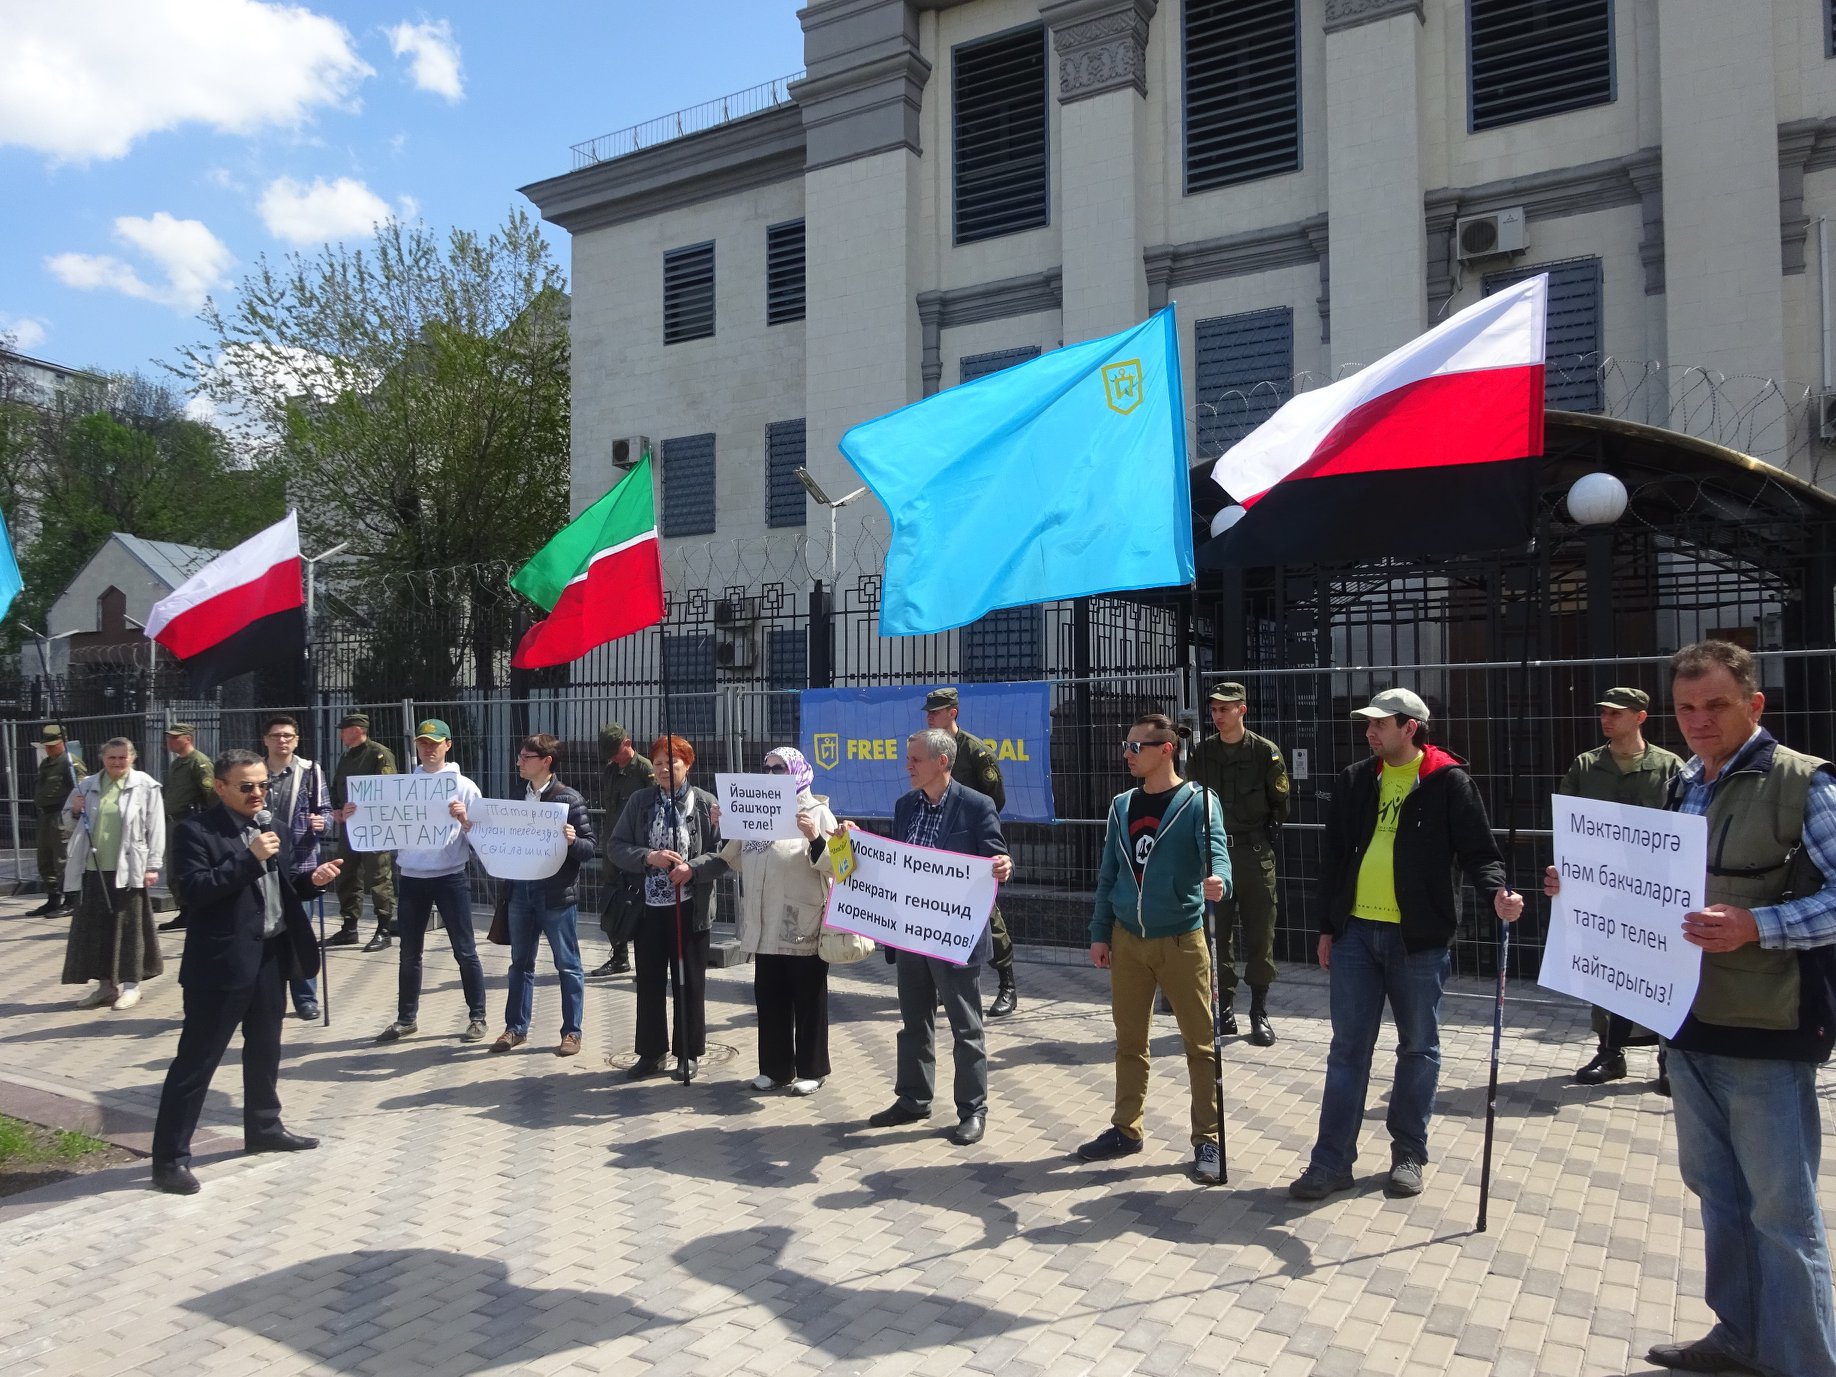 Moskou heeft de “Vrije Idel-Oeral” uitgeroepen tot een “ongewenste organisatie in Rusland”. Wat zit hierachter?